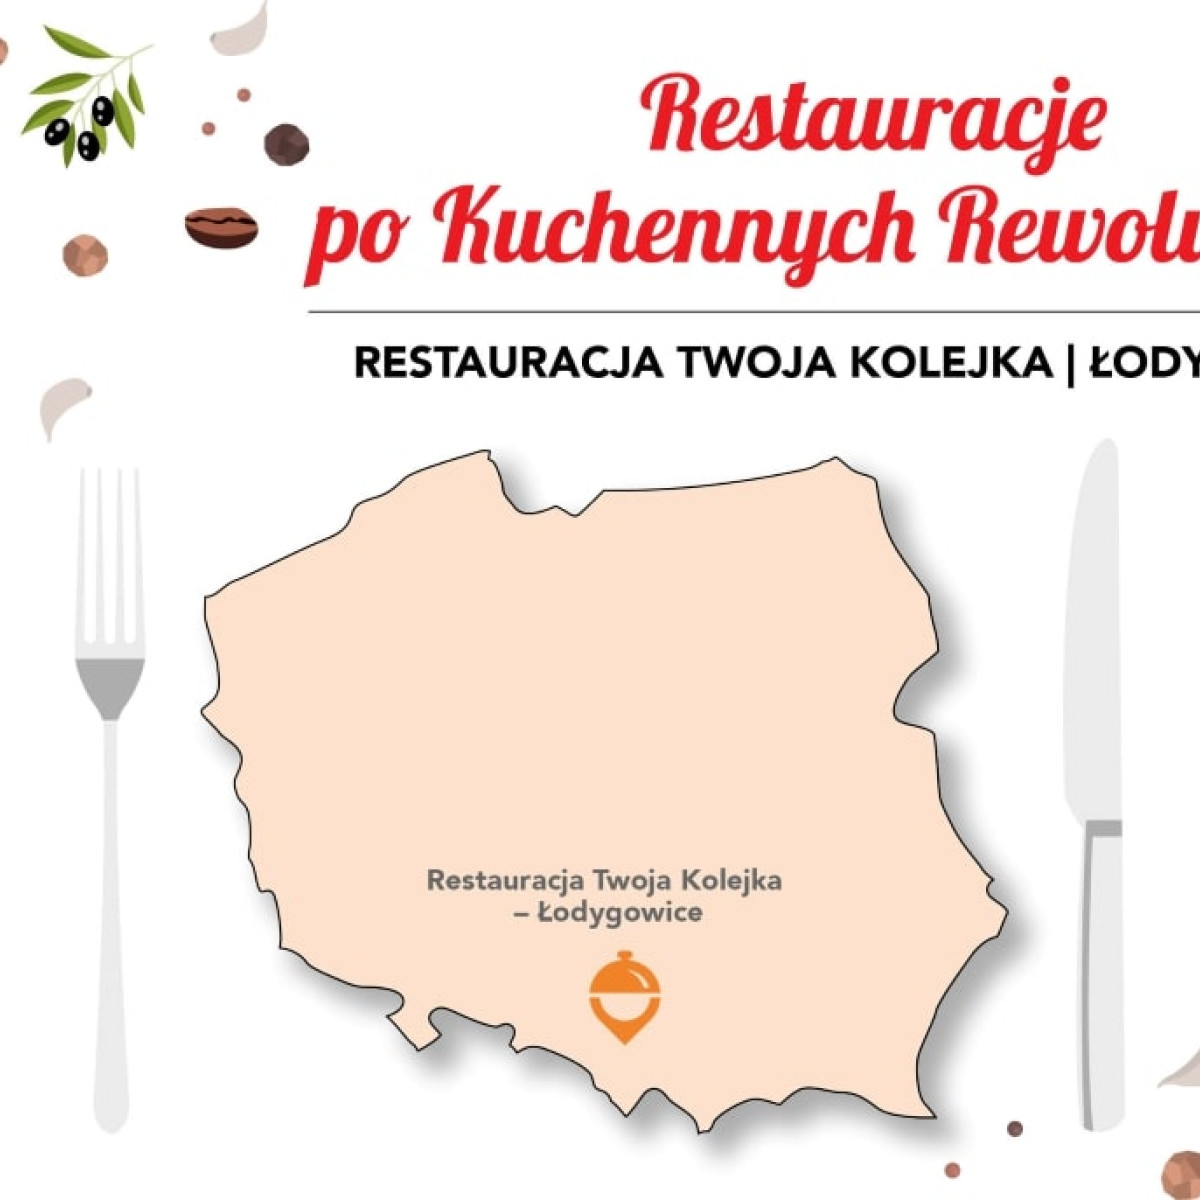 Restauracje po Kuchennych Rewolucjach. Restauracja Twoja Kolejka w Łodygowicach